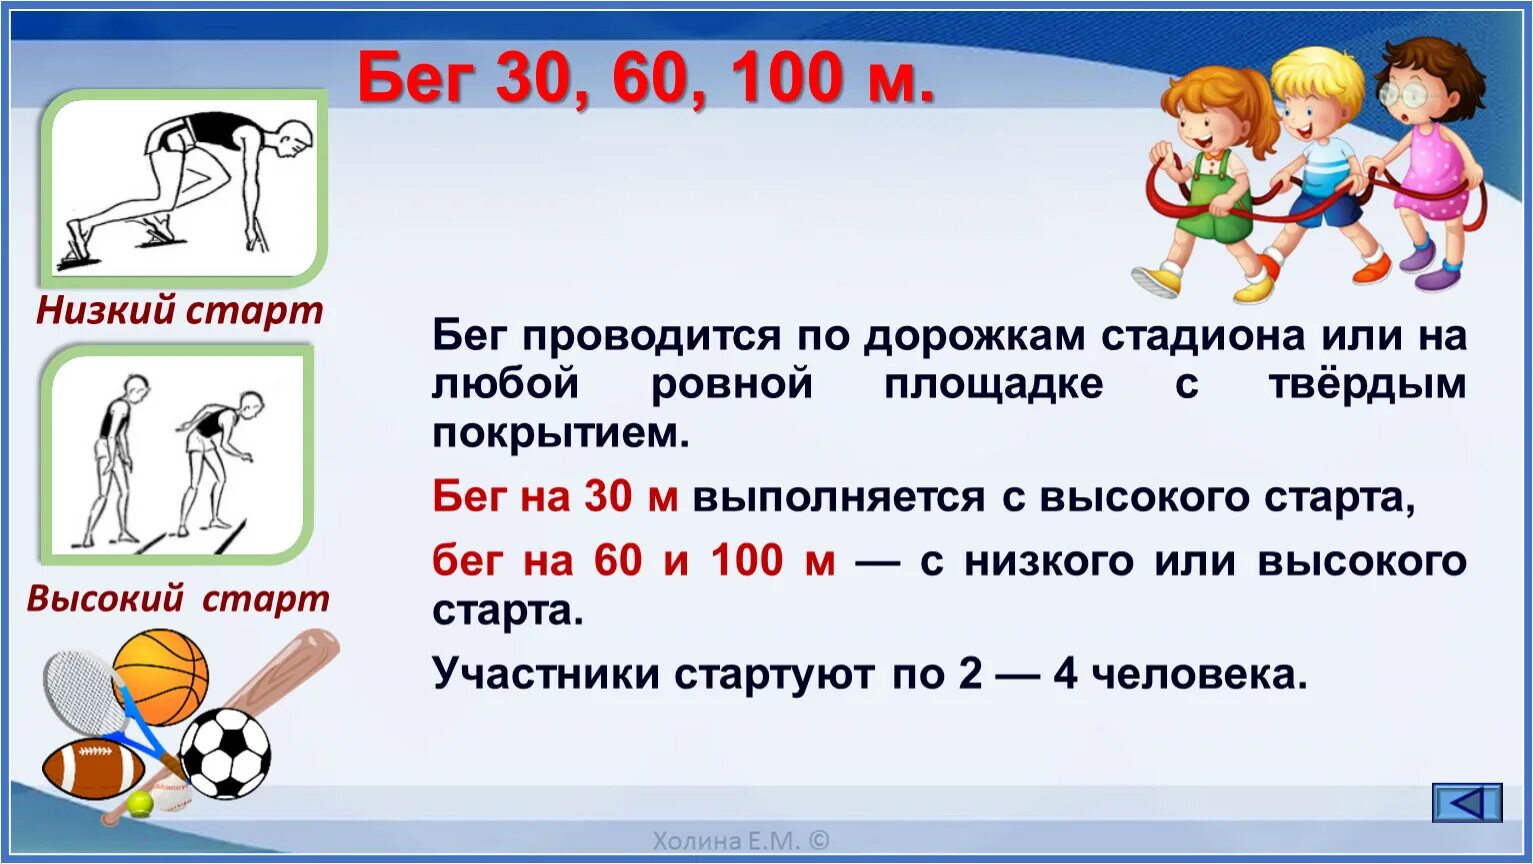 Результаты на 30 м. Тест бег 30 метров 2 класс. Сообщение бег 30 метров. Бег на 30 60 100 метров. Техника бега на дистанцию 30 метров.